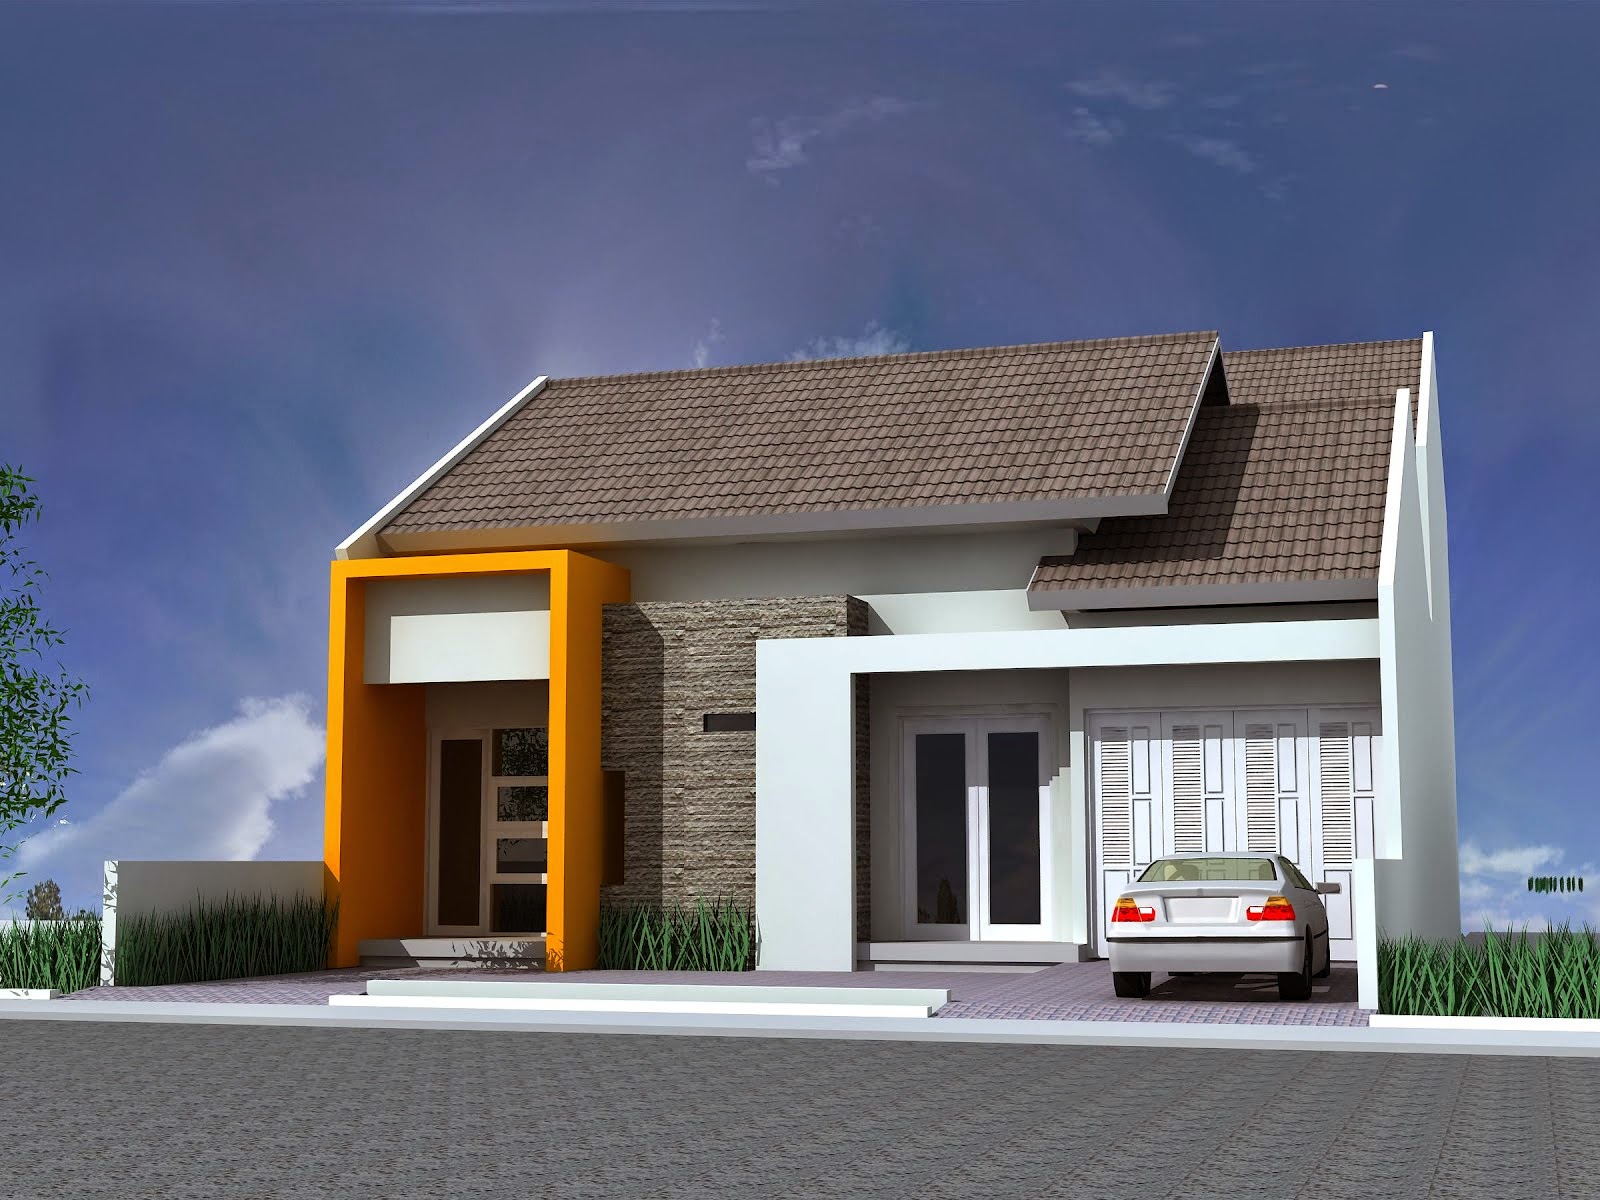 Gambar Rumah Minimalis Satu Lantai Terbaru 2015  Desain 